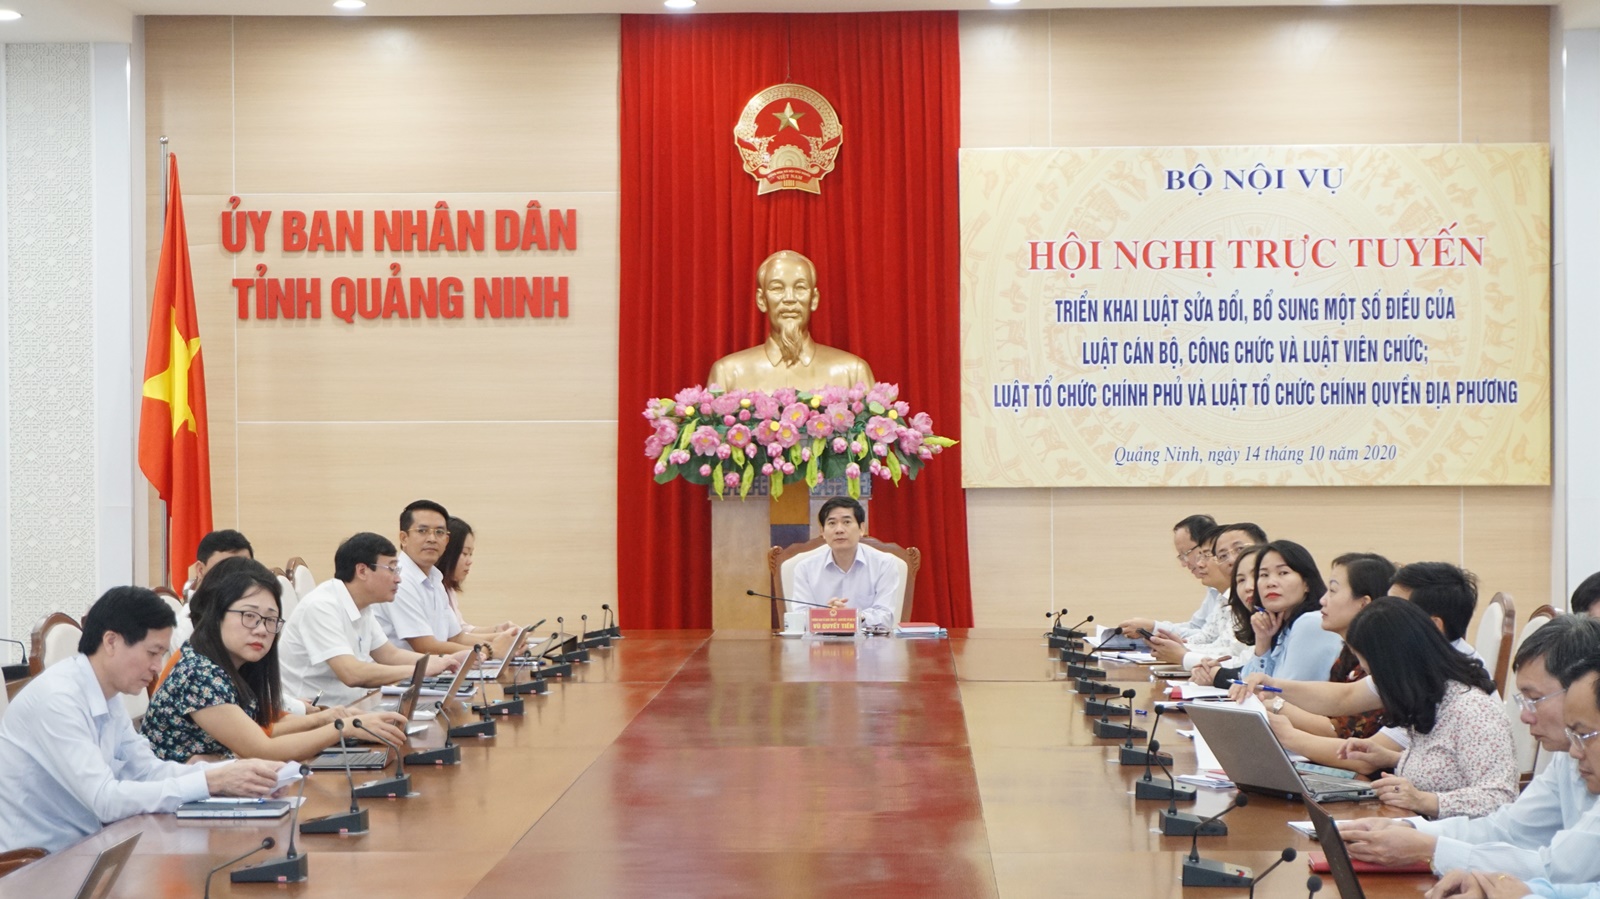 Quảng cảnh hội nghị trực tuyến tại điểm cầu tỉnh Quảng Ninh.